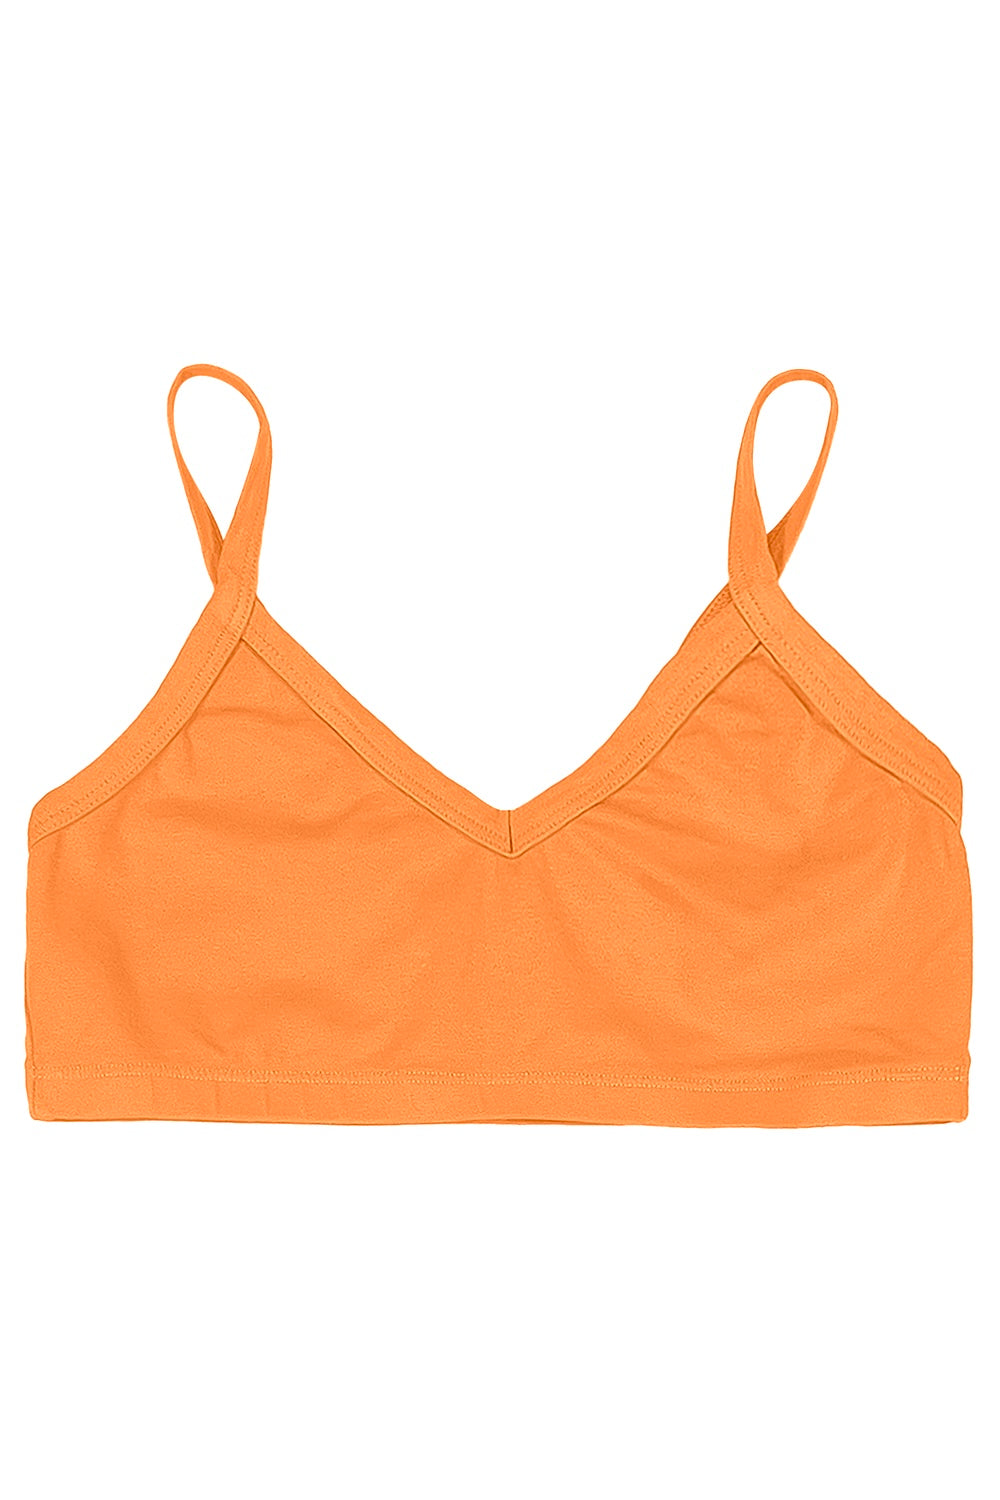 Bralette | Jungmaven Hemp Clothing & Accessories / Color: Apricot Crush